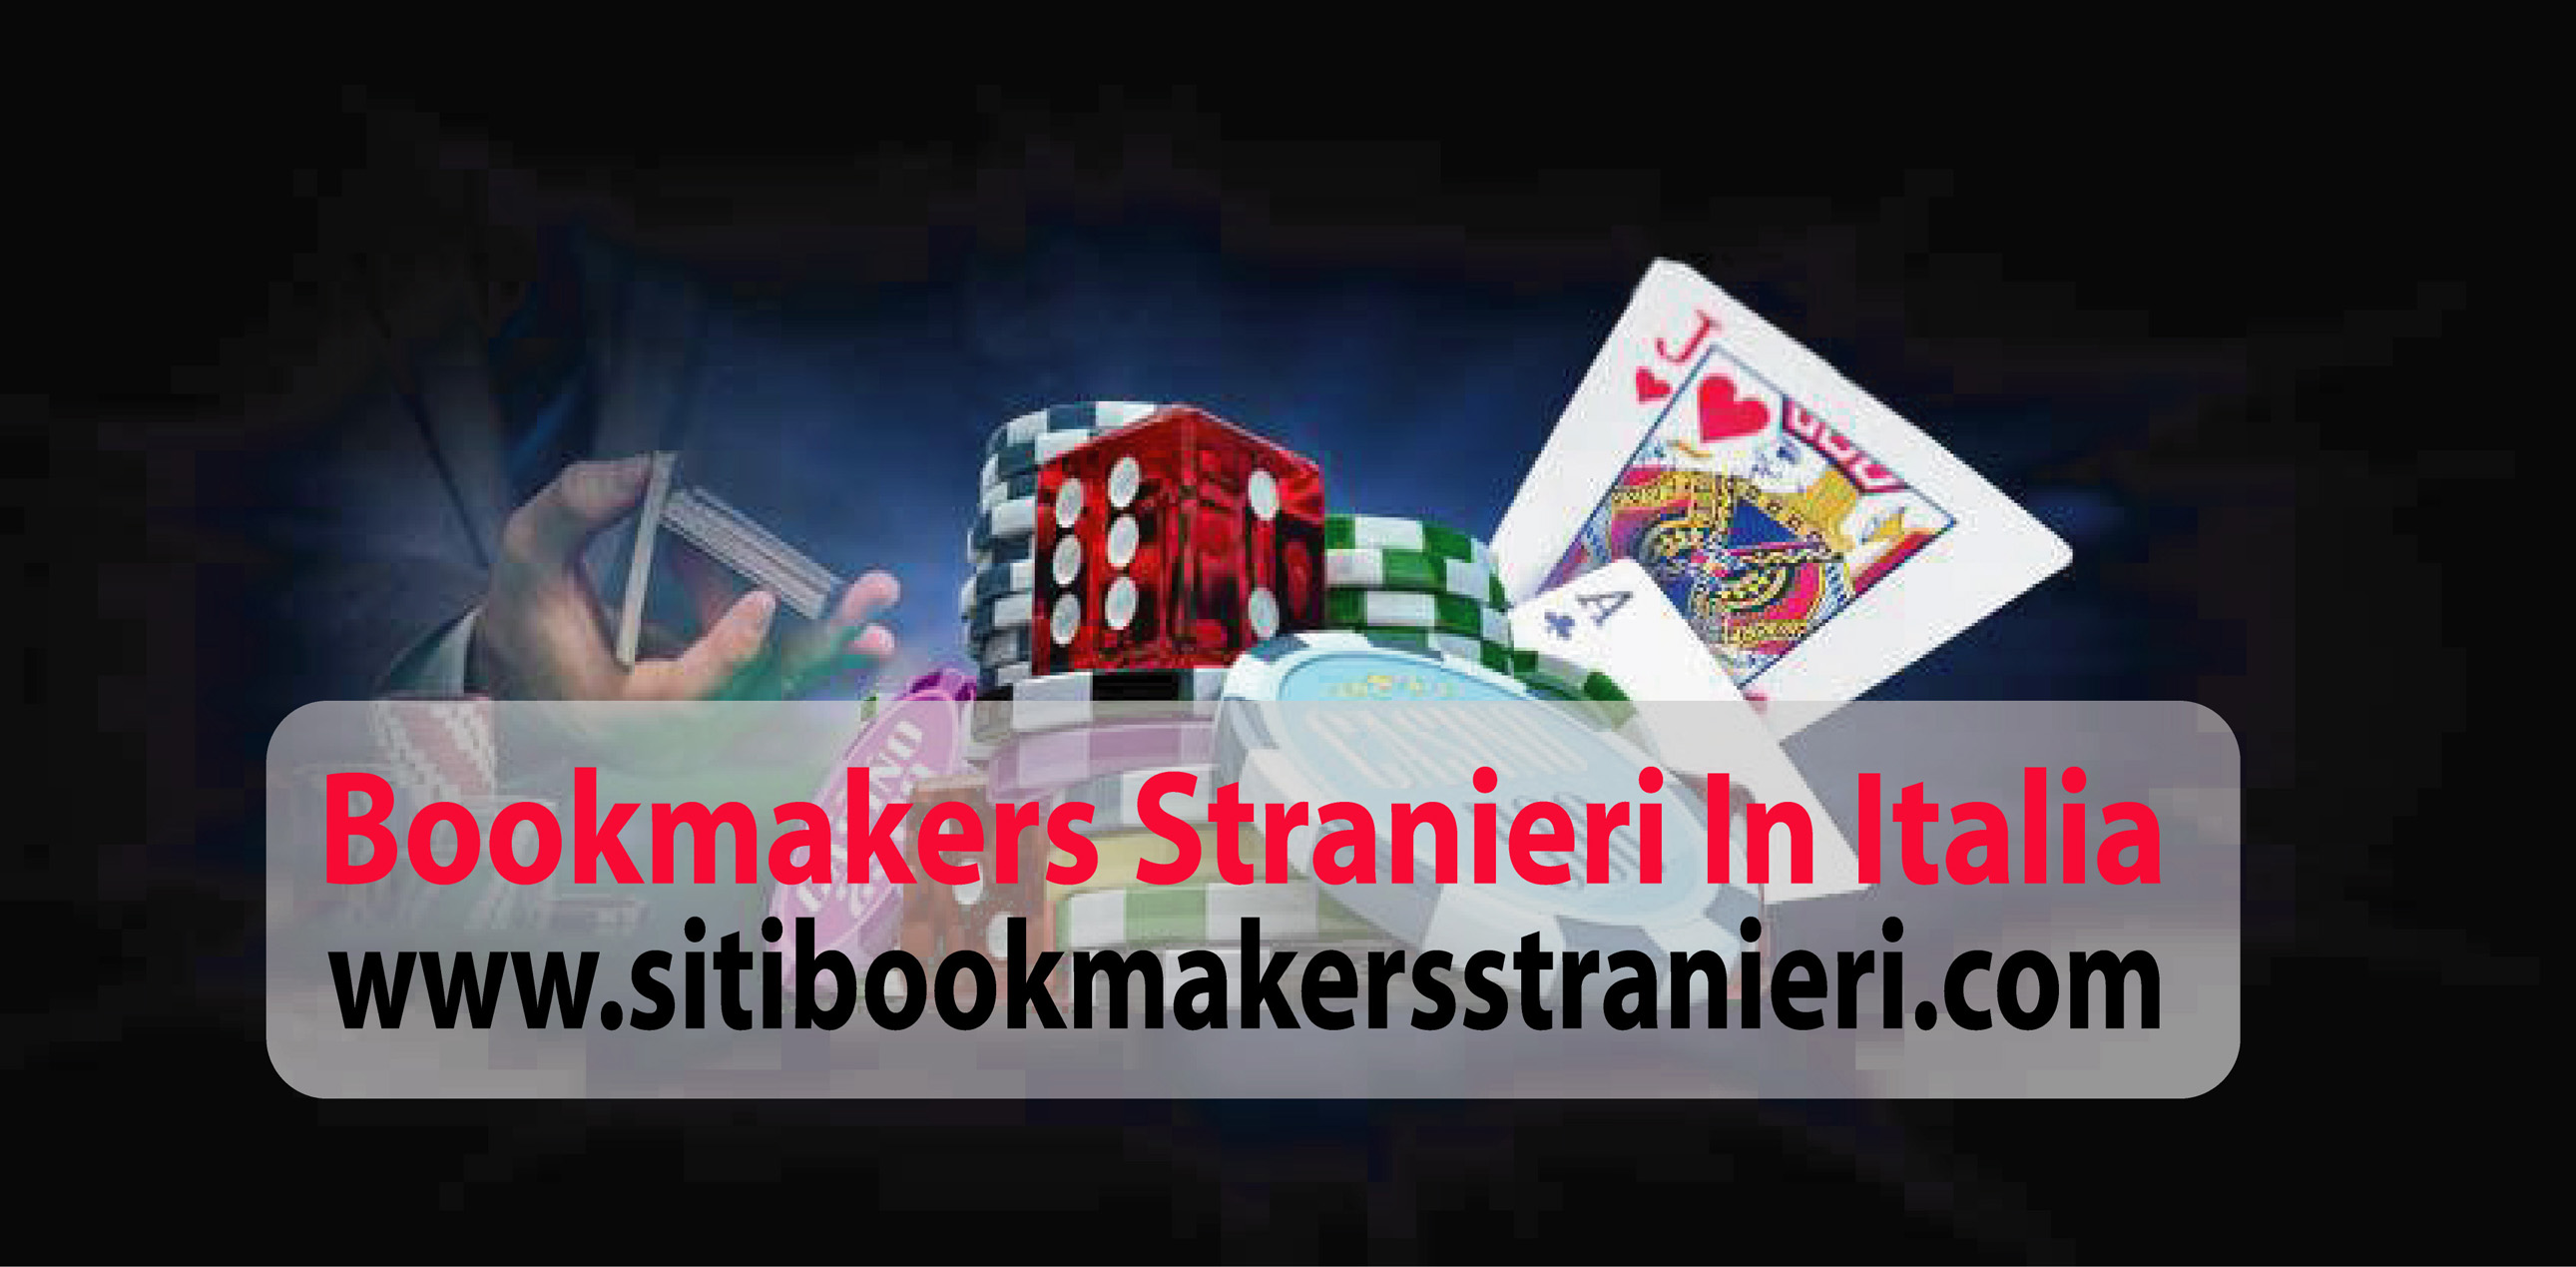 bookmakers stranieri in italia_11.jpg